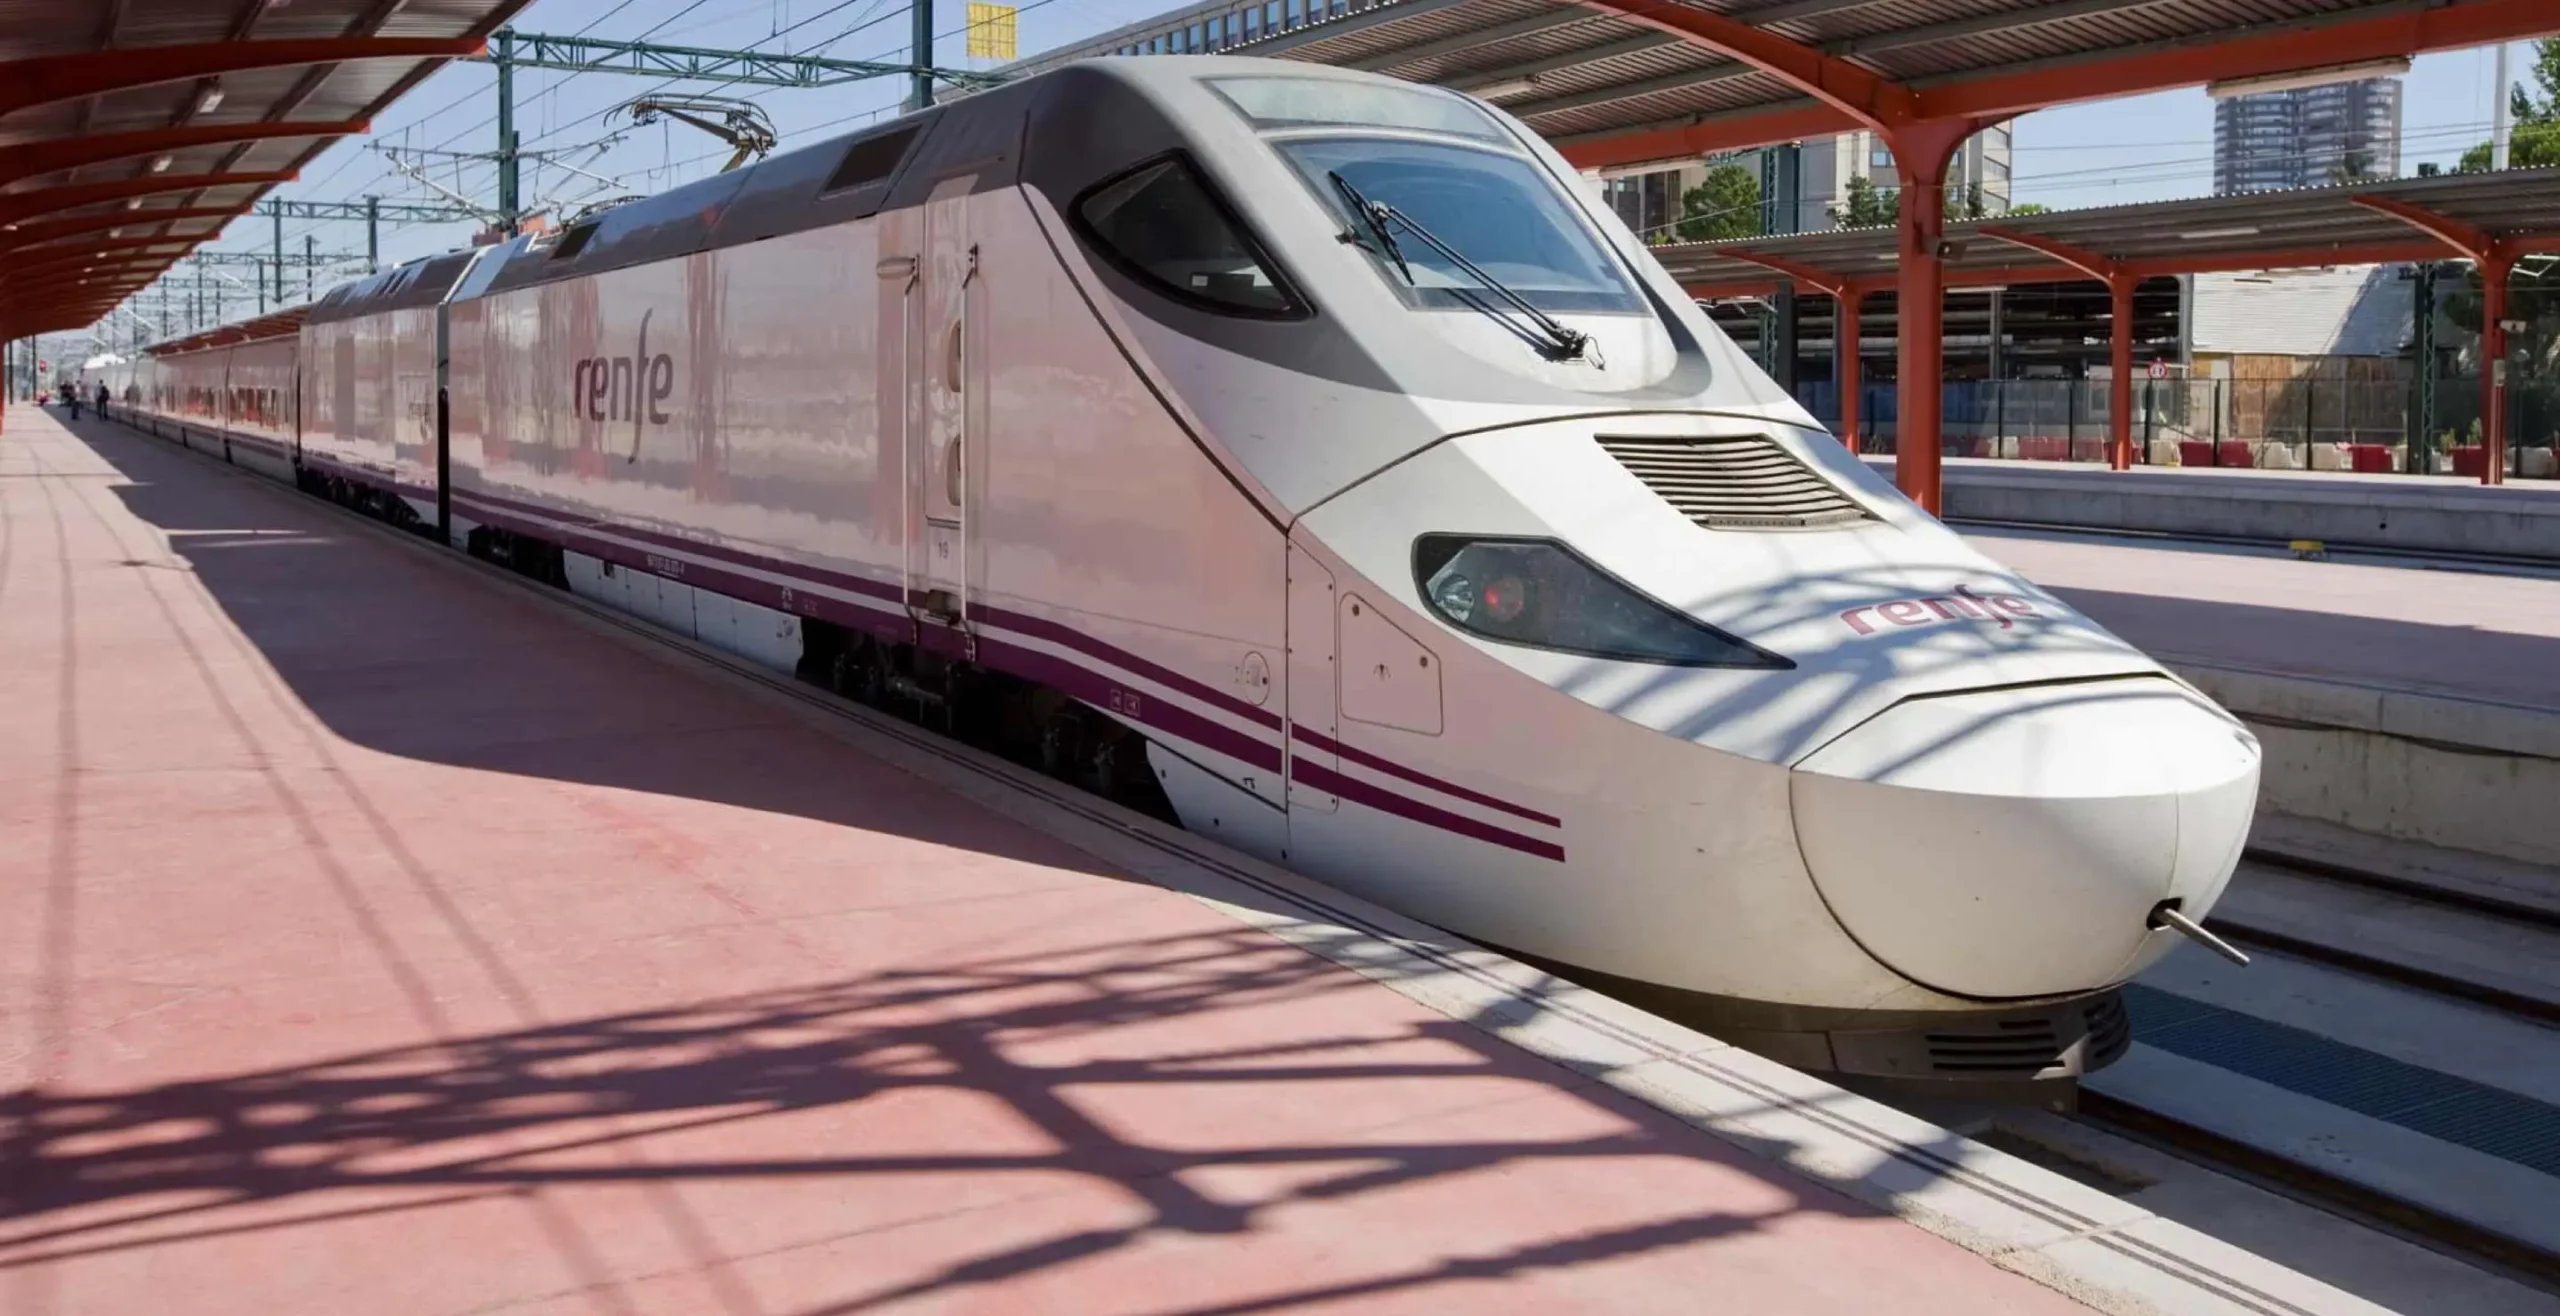 de que estacion sale el ave madrid barcelona - Qué tren tomar desde Madrid a Barcelona